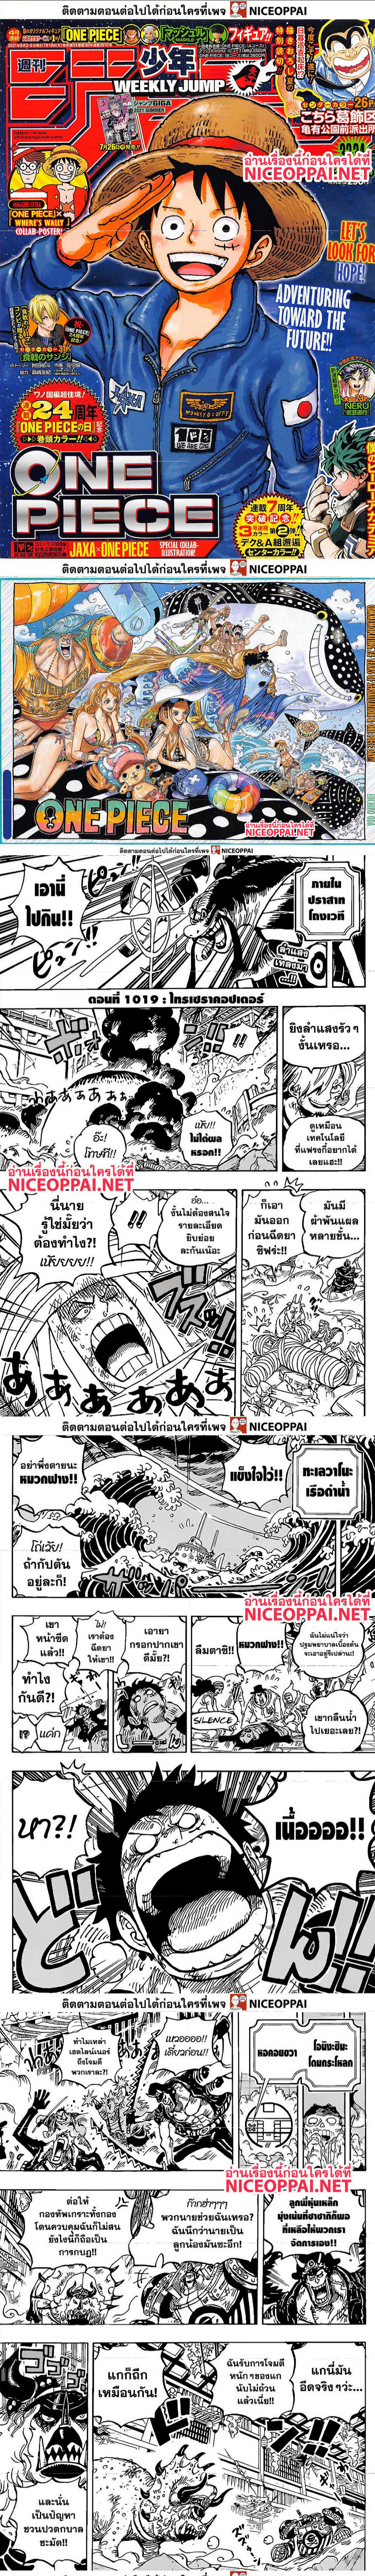 One Piece1019 (1)